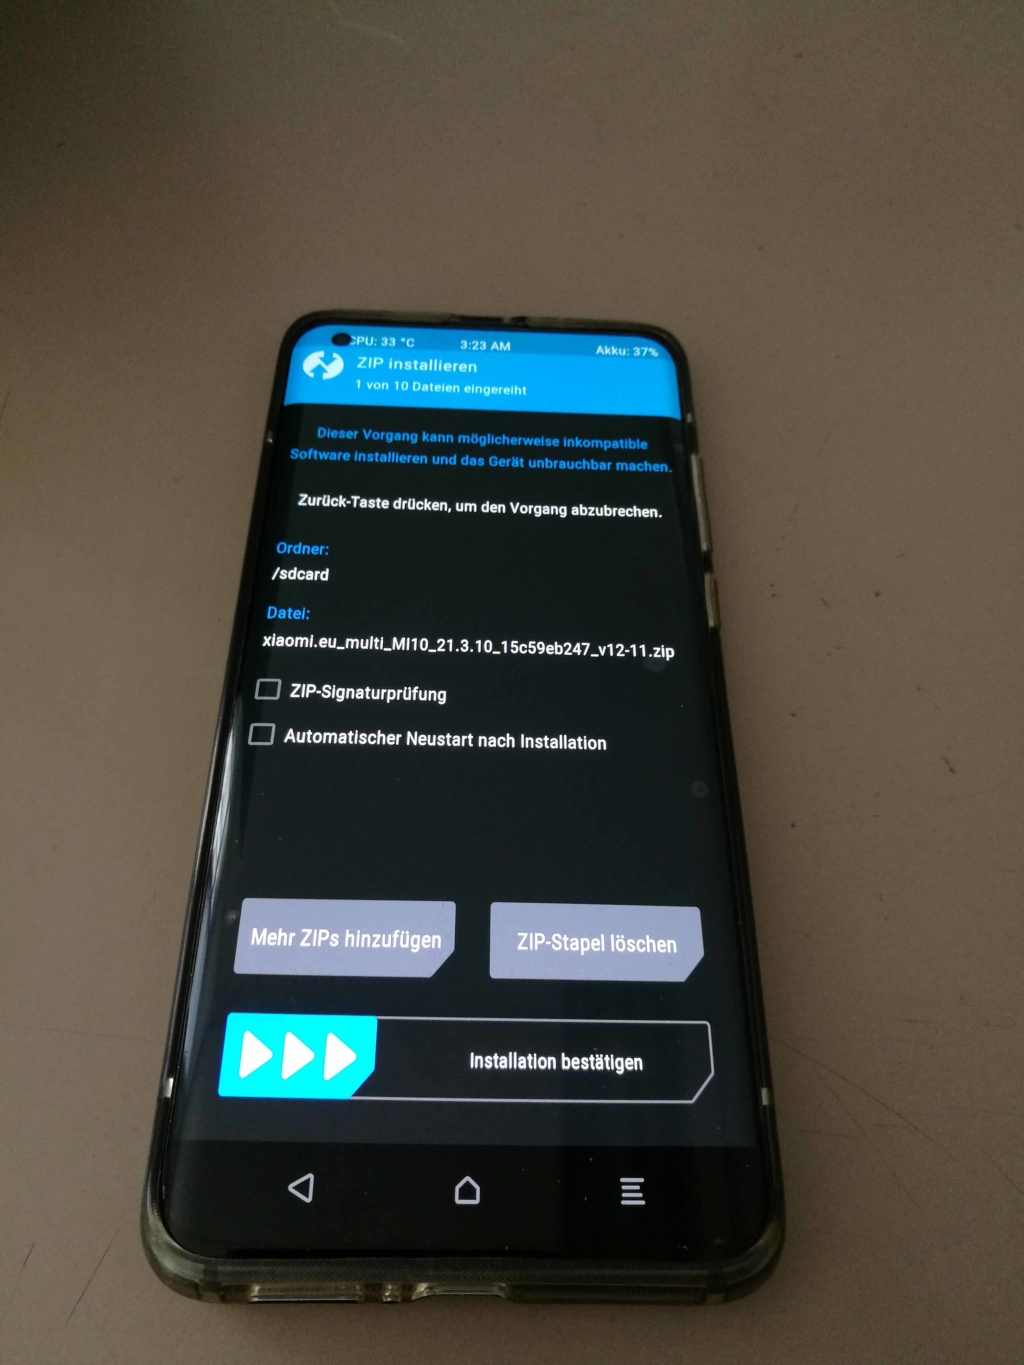 Xiaomi Mi 10 EU ROM Update - Installation bestätigen